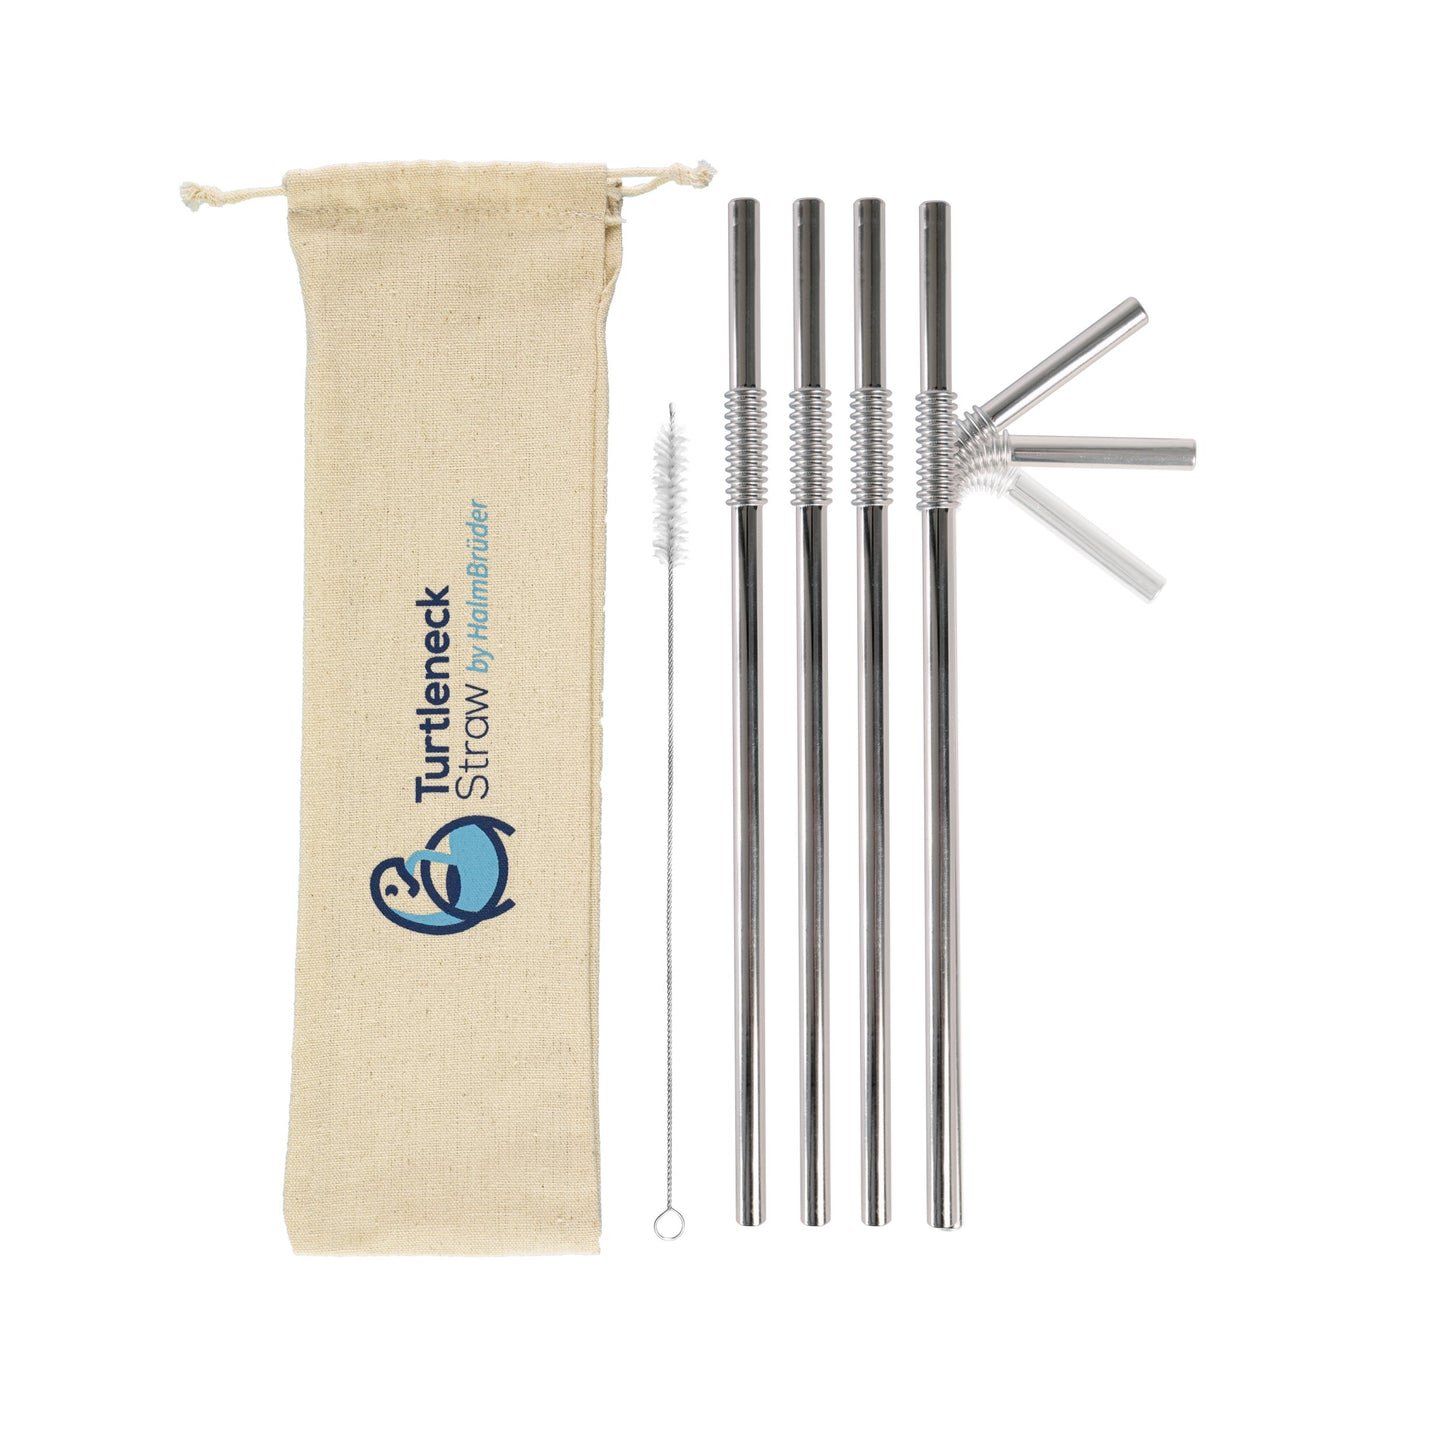 Biegsamer Trinkhalm aus Edelstahl - Turtleneck® Straw, Lang 28 cm - HalmBrüder - Turtleneck Straw, biegsame Edelstahl Strohhalme